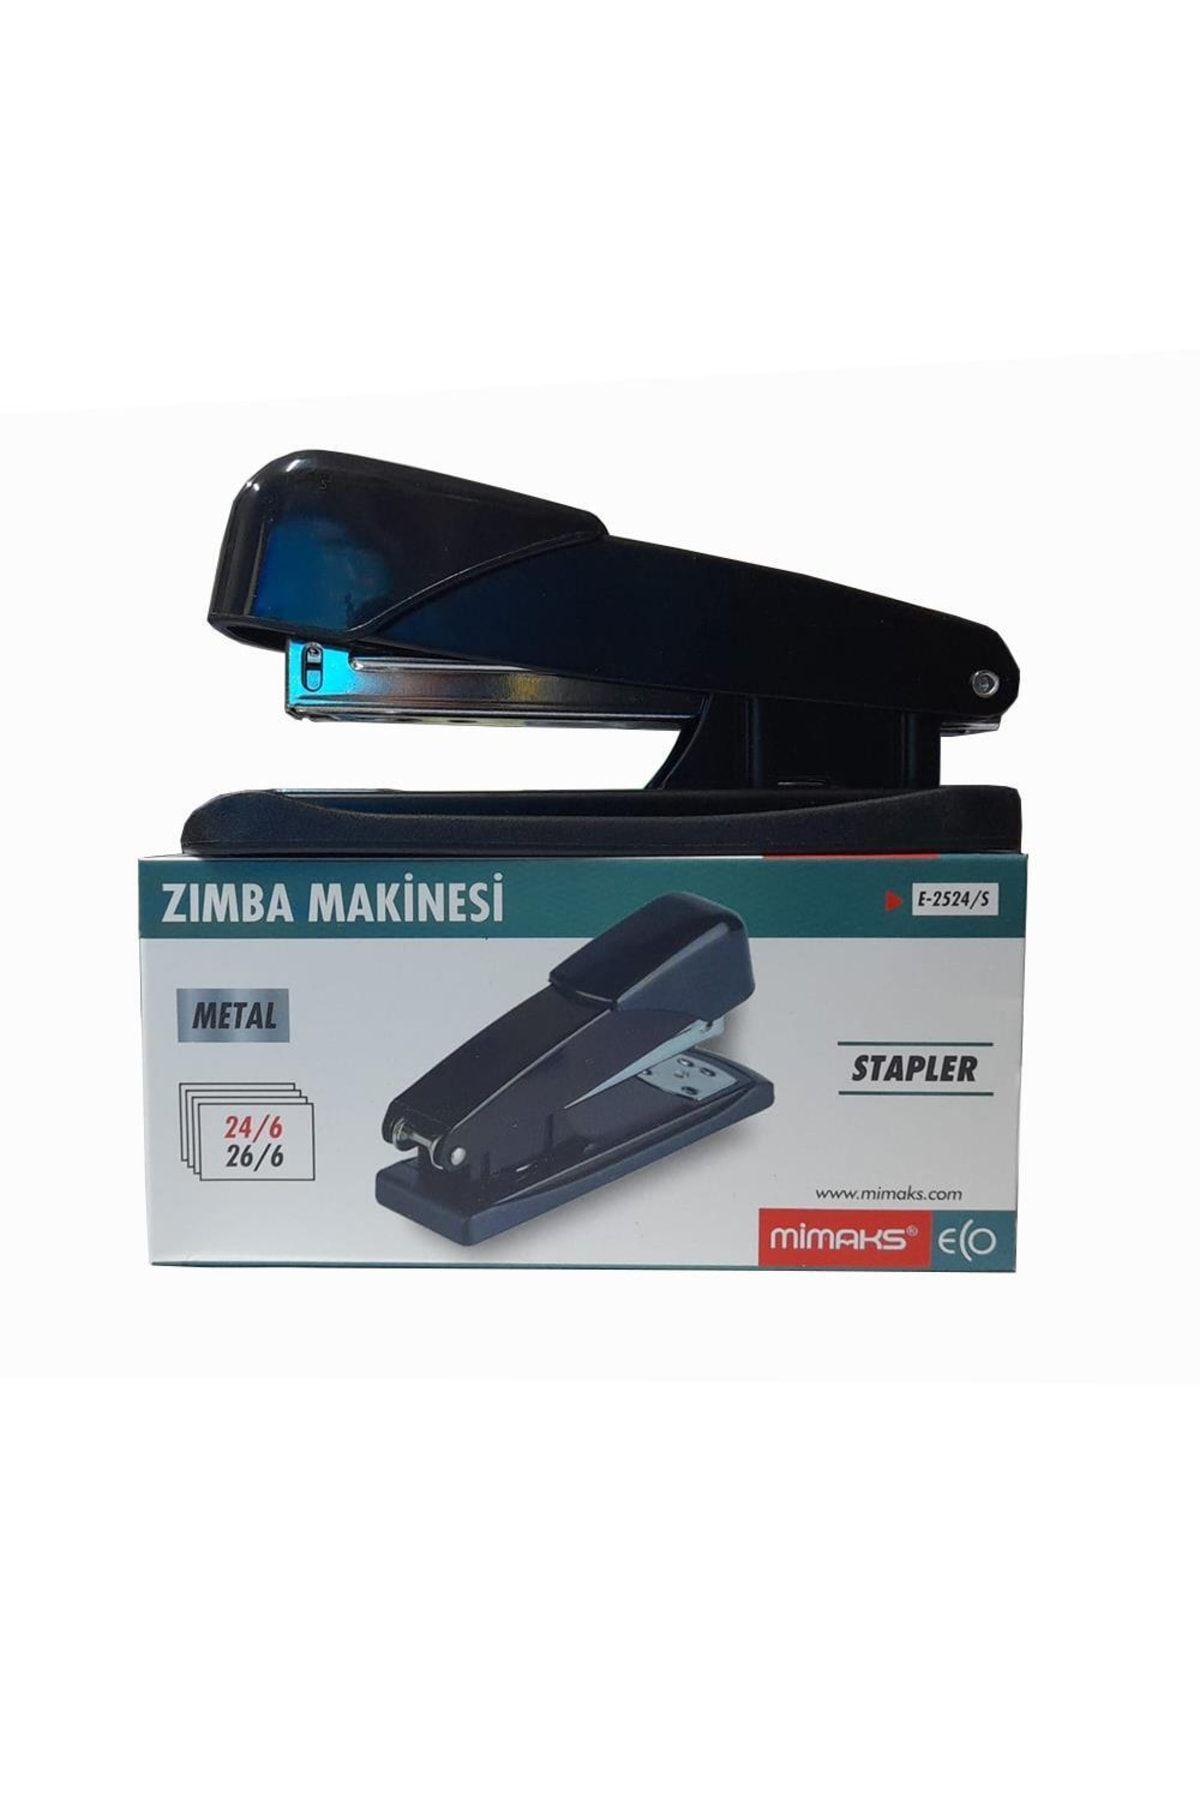 Mimaks Zımba Makinesi Metal Siyah Stapler 24/6 1 Adet Büyük Zımba Makinası 25-30 Sayfa